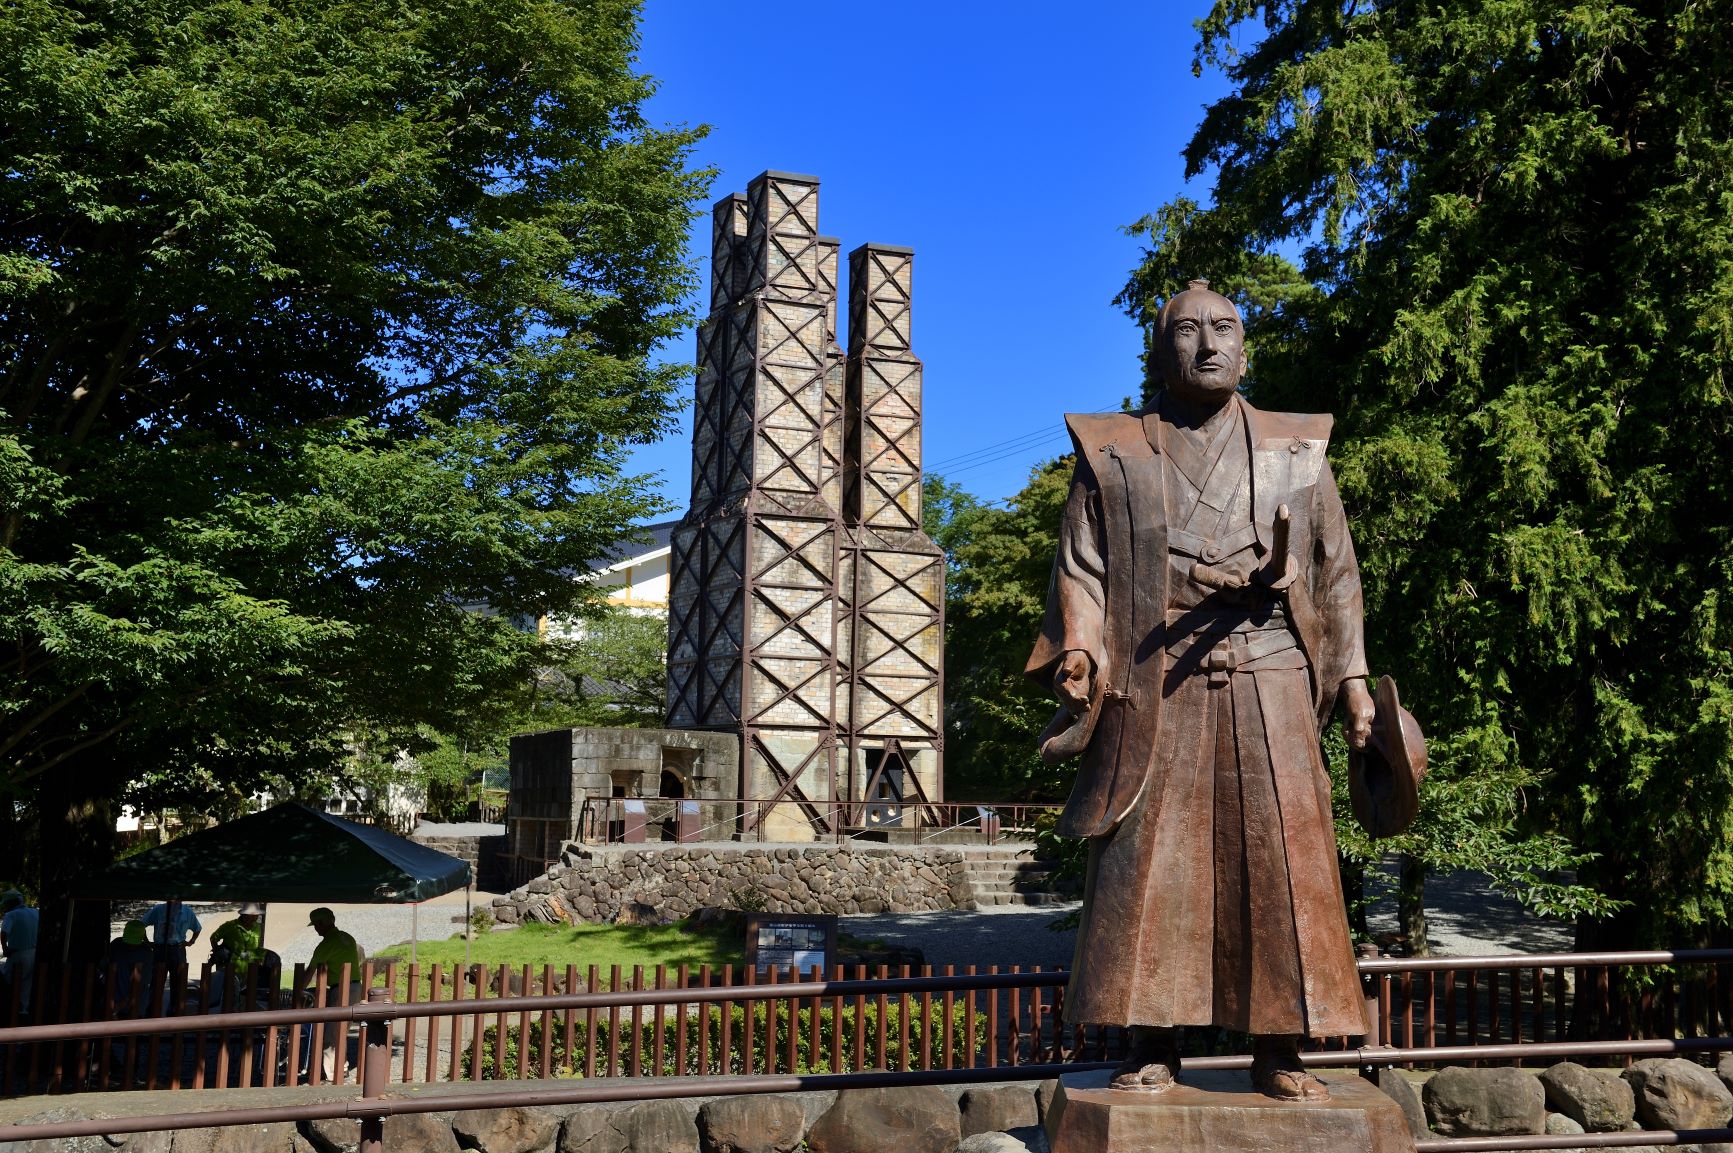 韮山反射炉は明治日本の産業遺産として世界遺産として登録されています